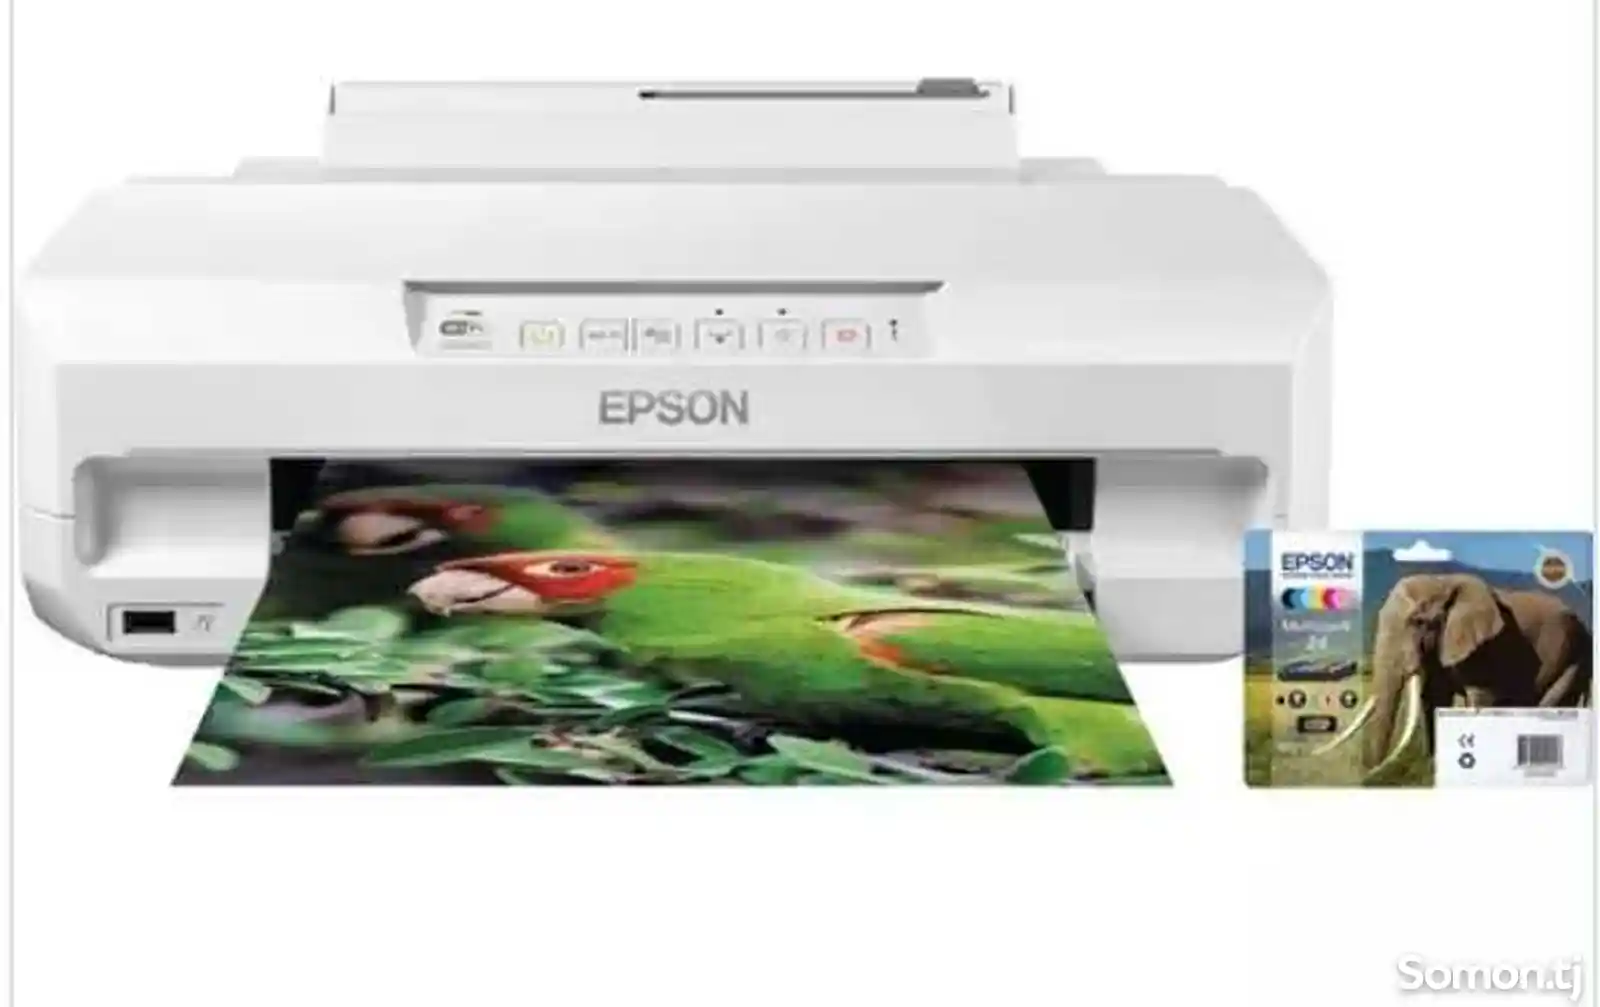 Цветной принтер Epson xp55-2